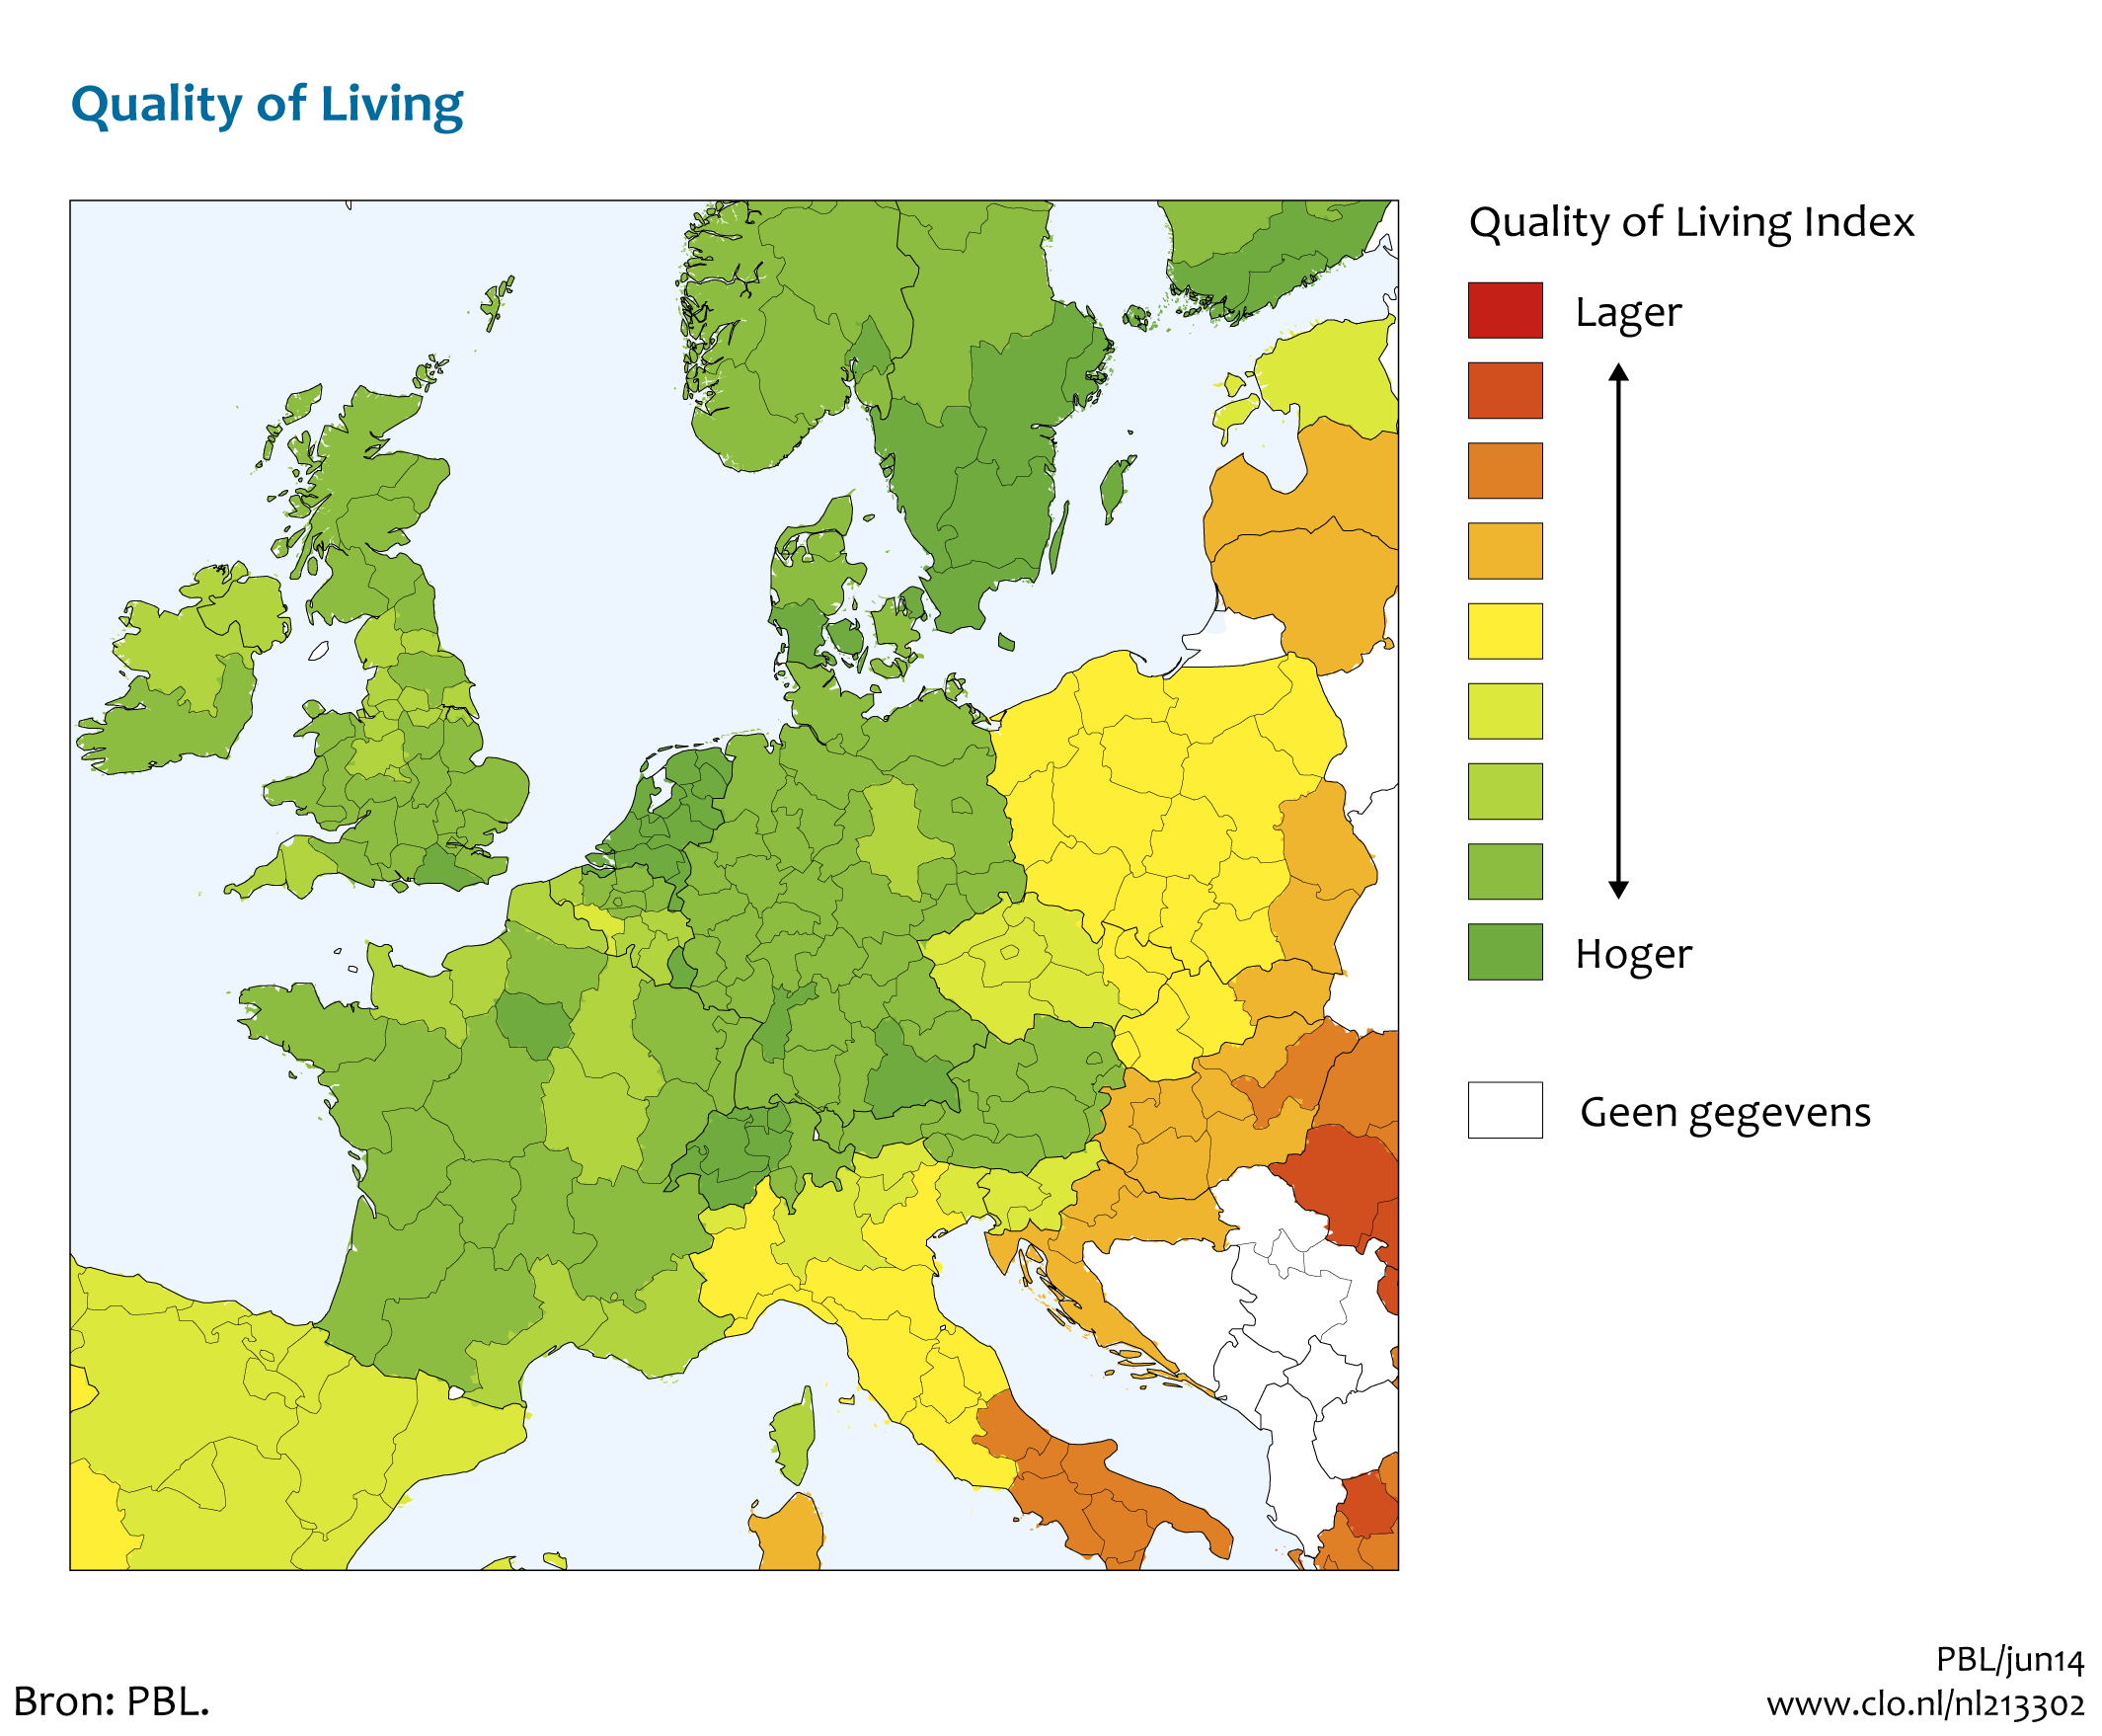 Figuur Regionale Quality of Living Index . In de rest van de tekst wordt deze figuur uitgebreider uitgelegd.